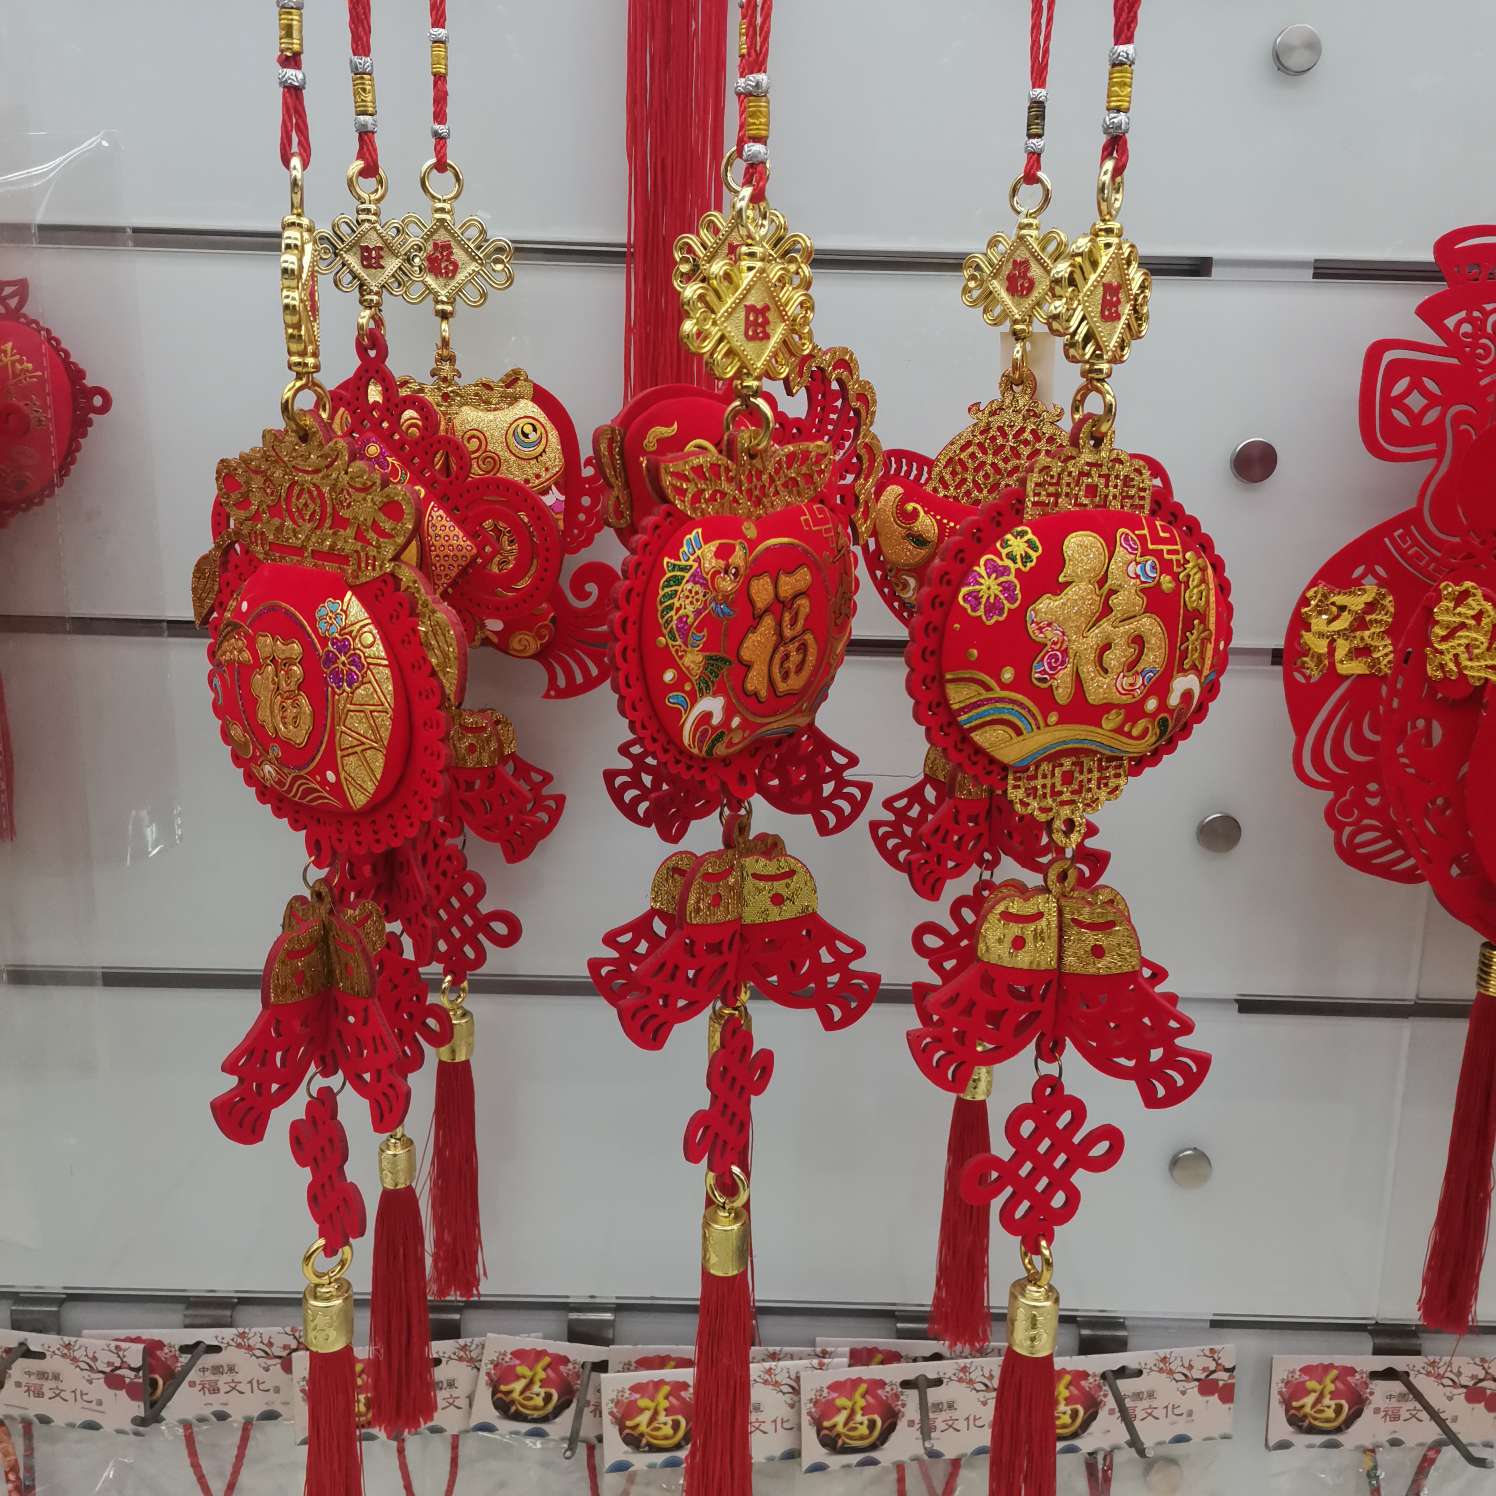 中国结福字厂家直销客厅装饰新款年货特色工艺品礼品细节图